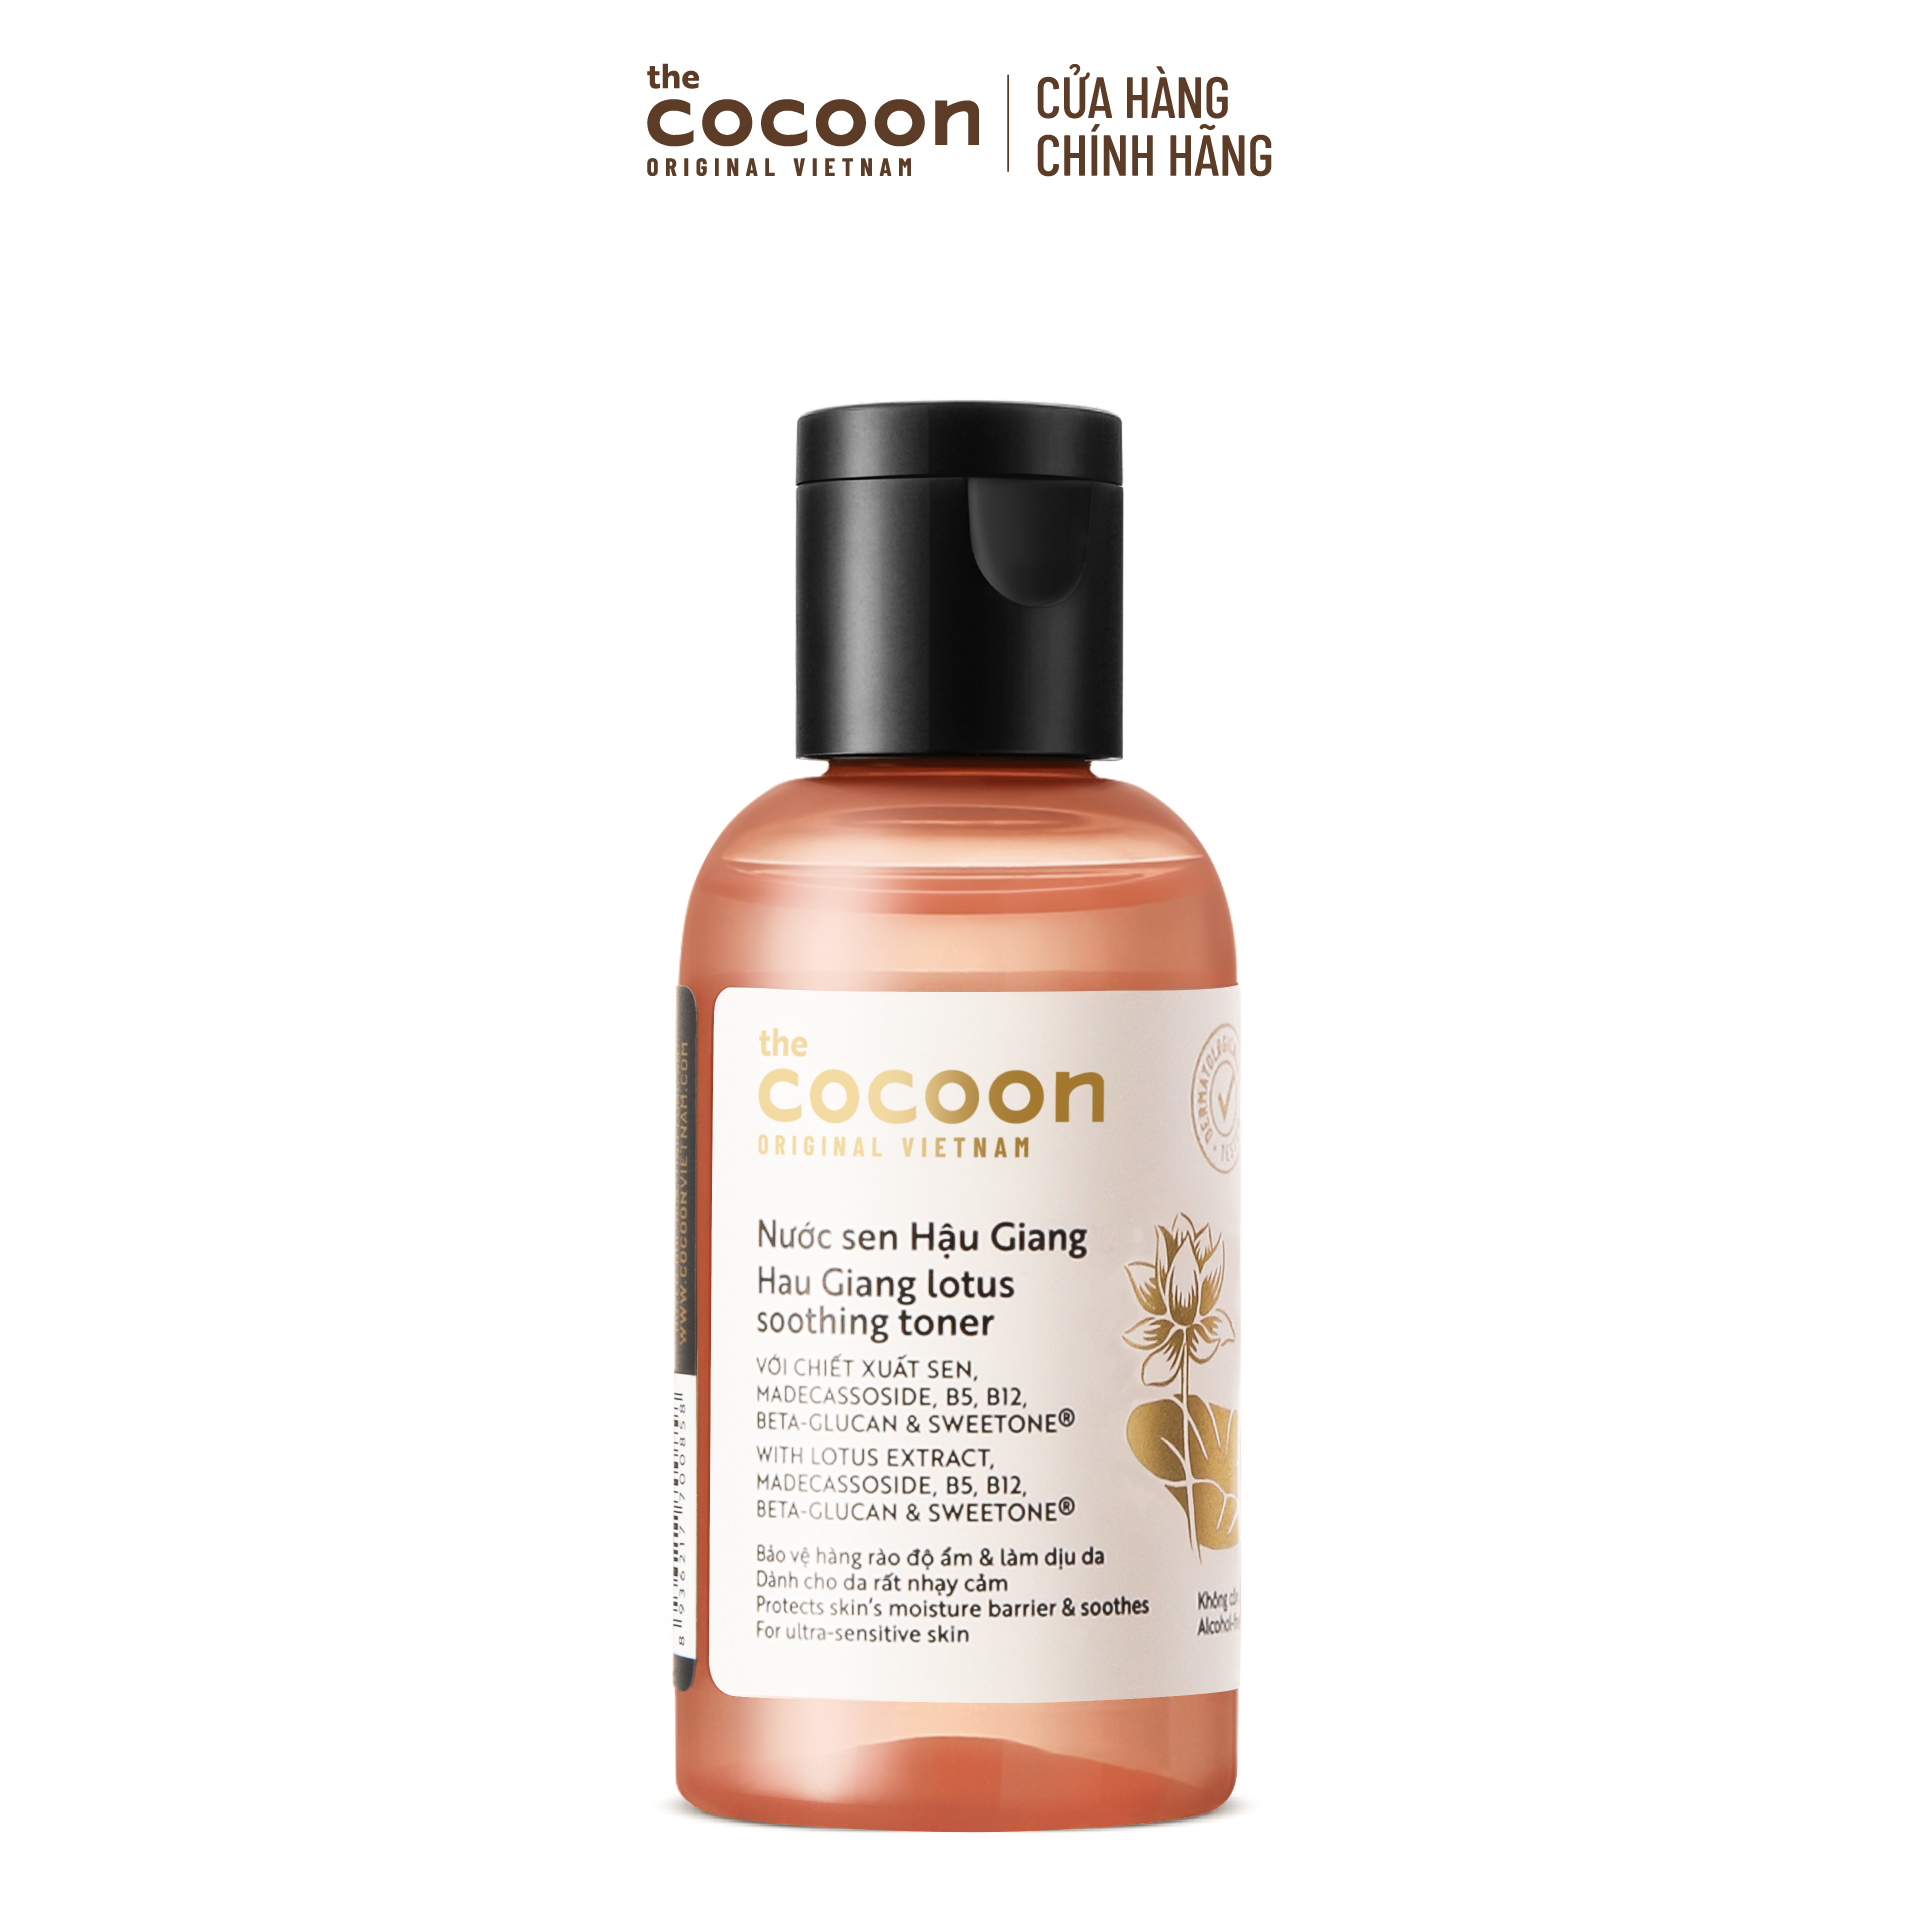 Trial size - Nước sen Hậu Giang (toner) Cocoon giúp phục hồi, cấp ẩm và làm dịu da 50ml